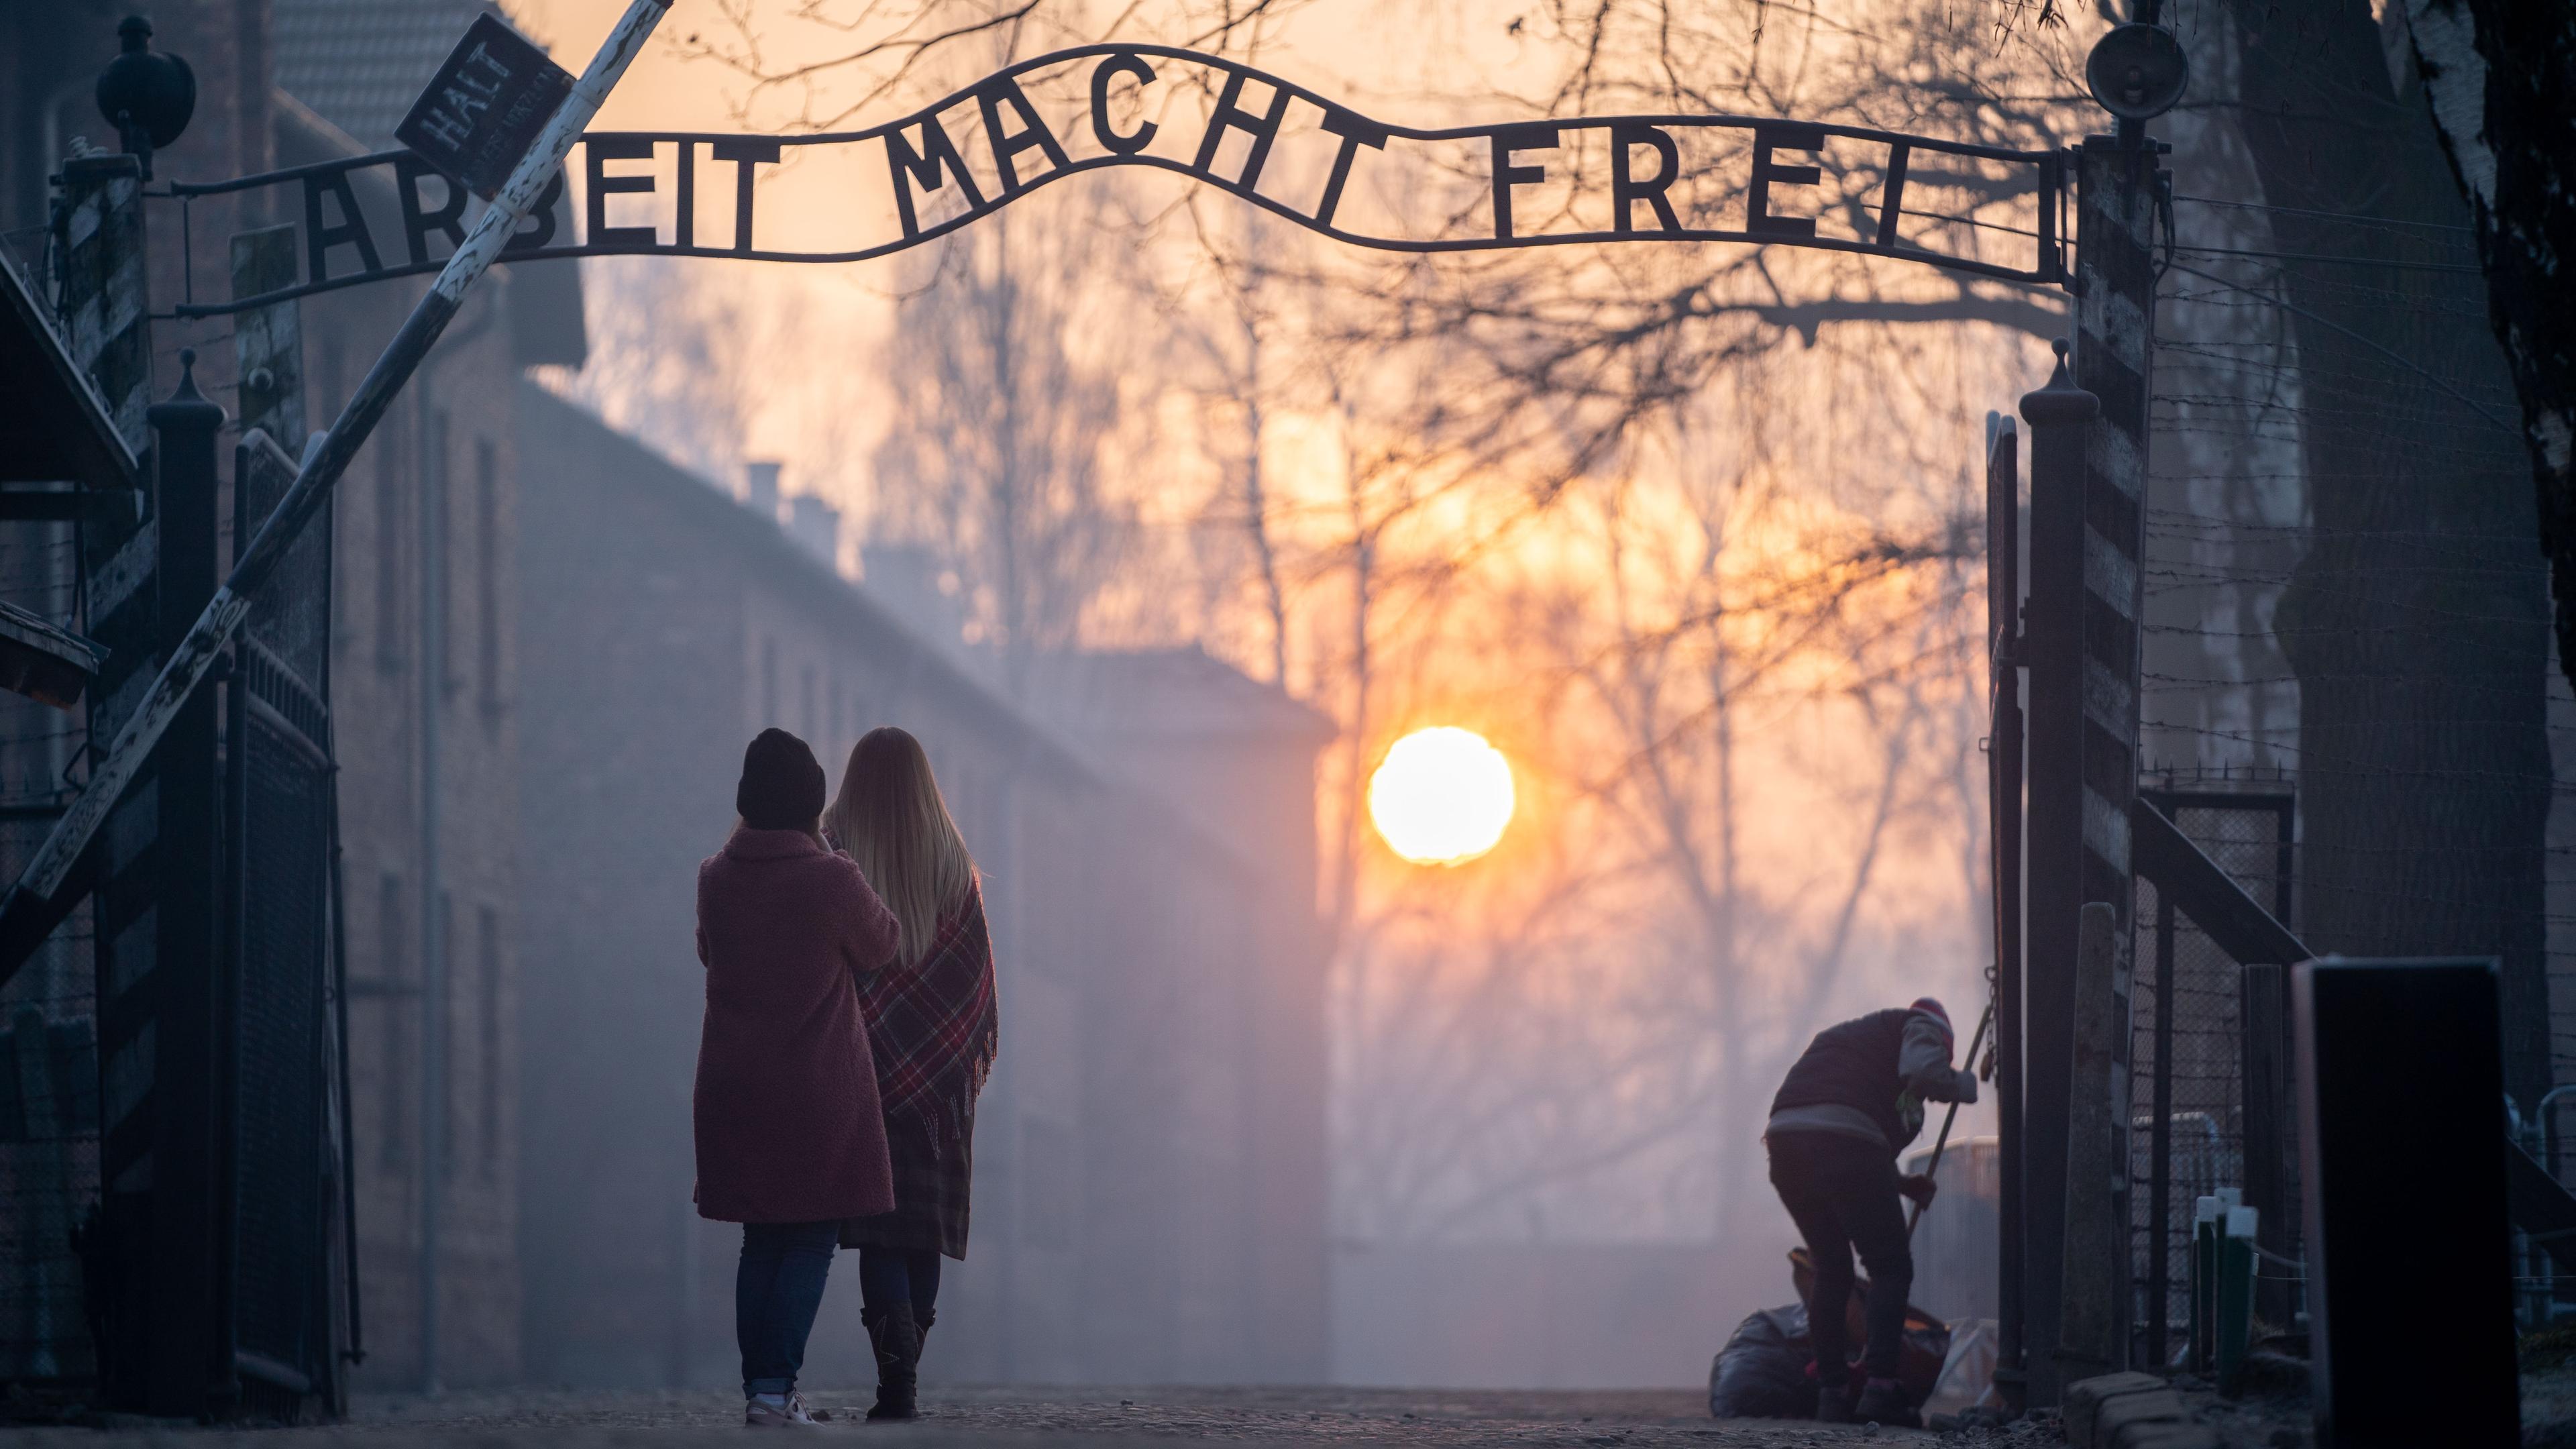 Zwei Personen stehen vor dem Schriftzug "Arbeit macht frei" im KZ Auschwitz